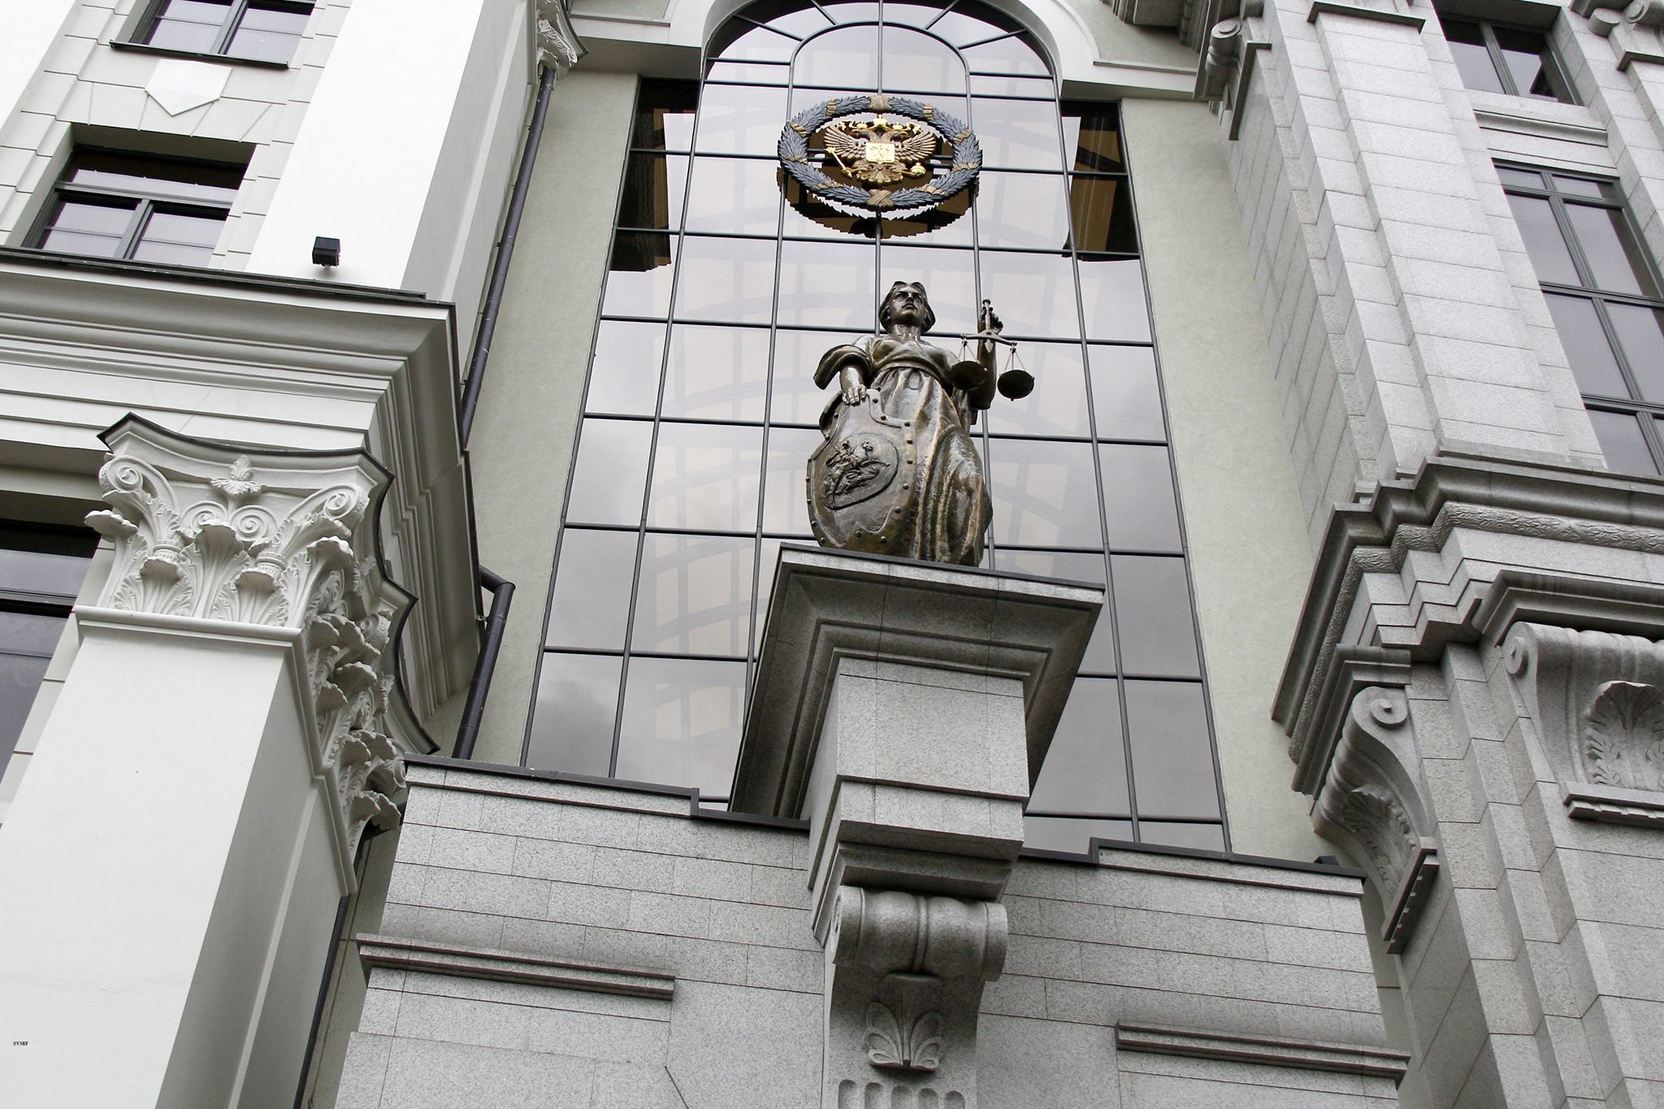 Верховный суд России признал украинский нацбатальон Азов террористической организацией